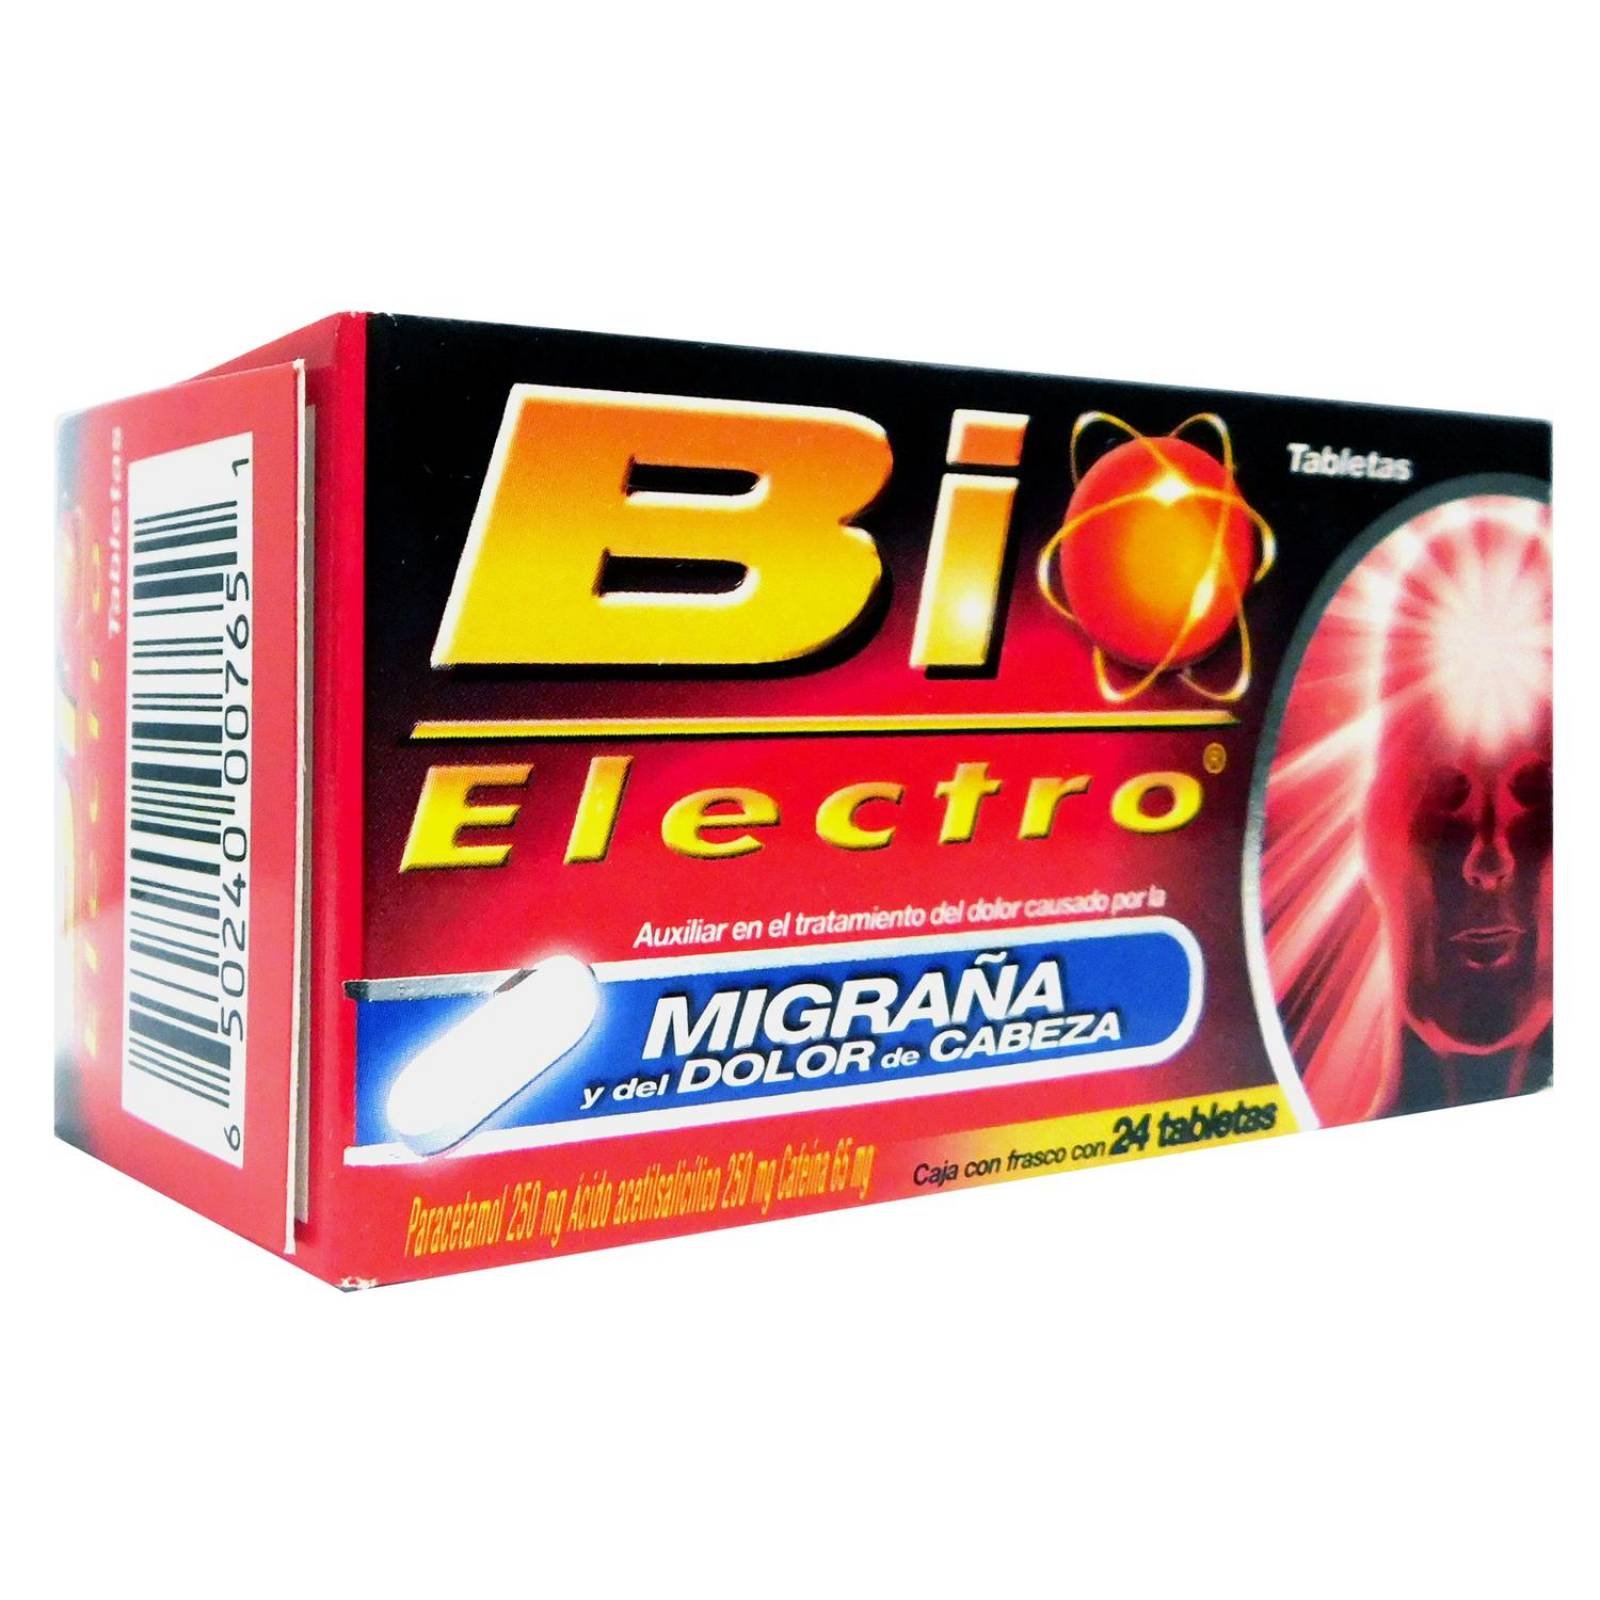 Bioelectro 250 mg / 250 mg / 65 mg Caja Con Frasco Con 24 Tabletas 